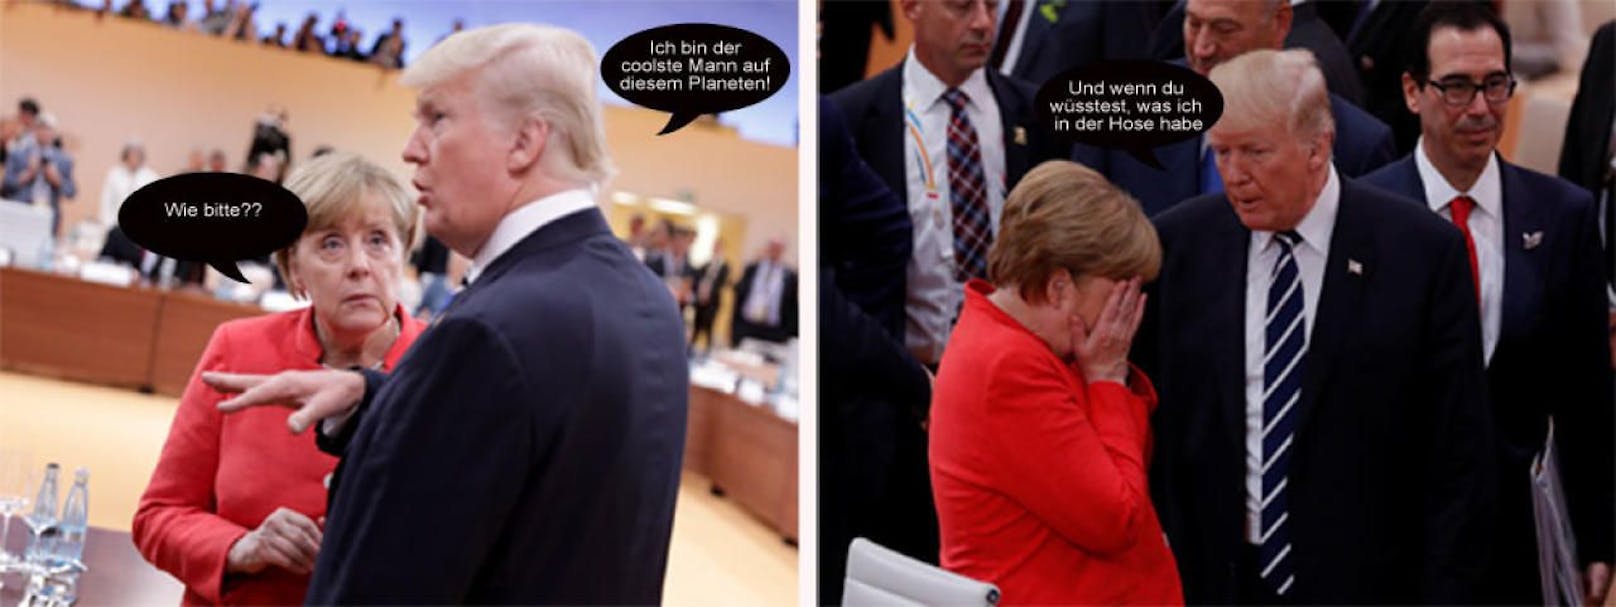 G20: Internet spottet über Trump-Treffen mit Merkel